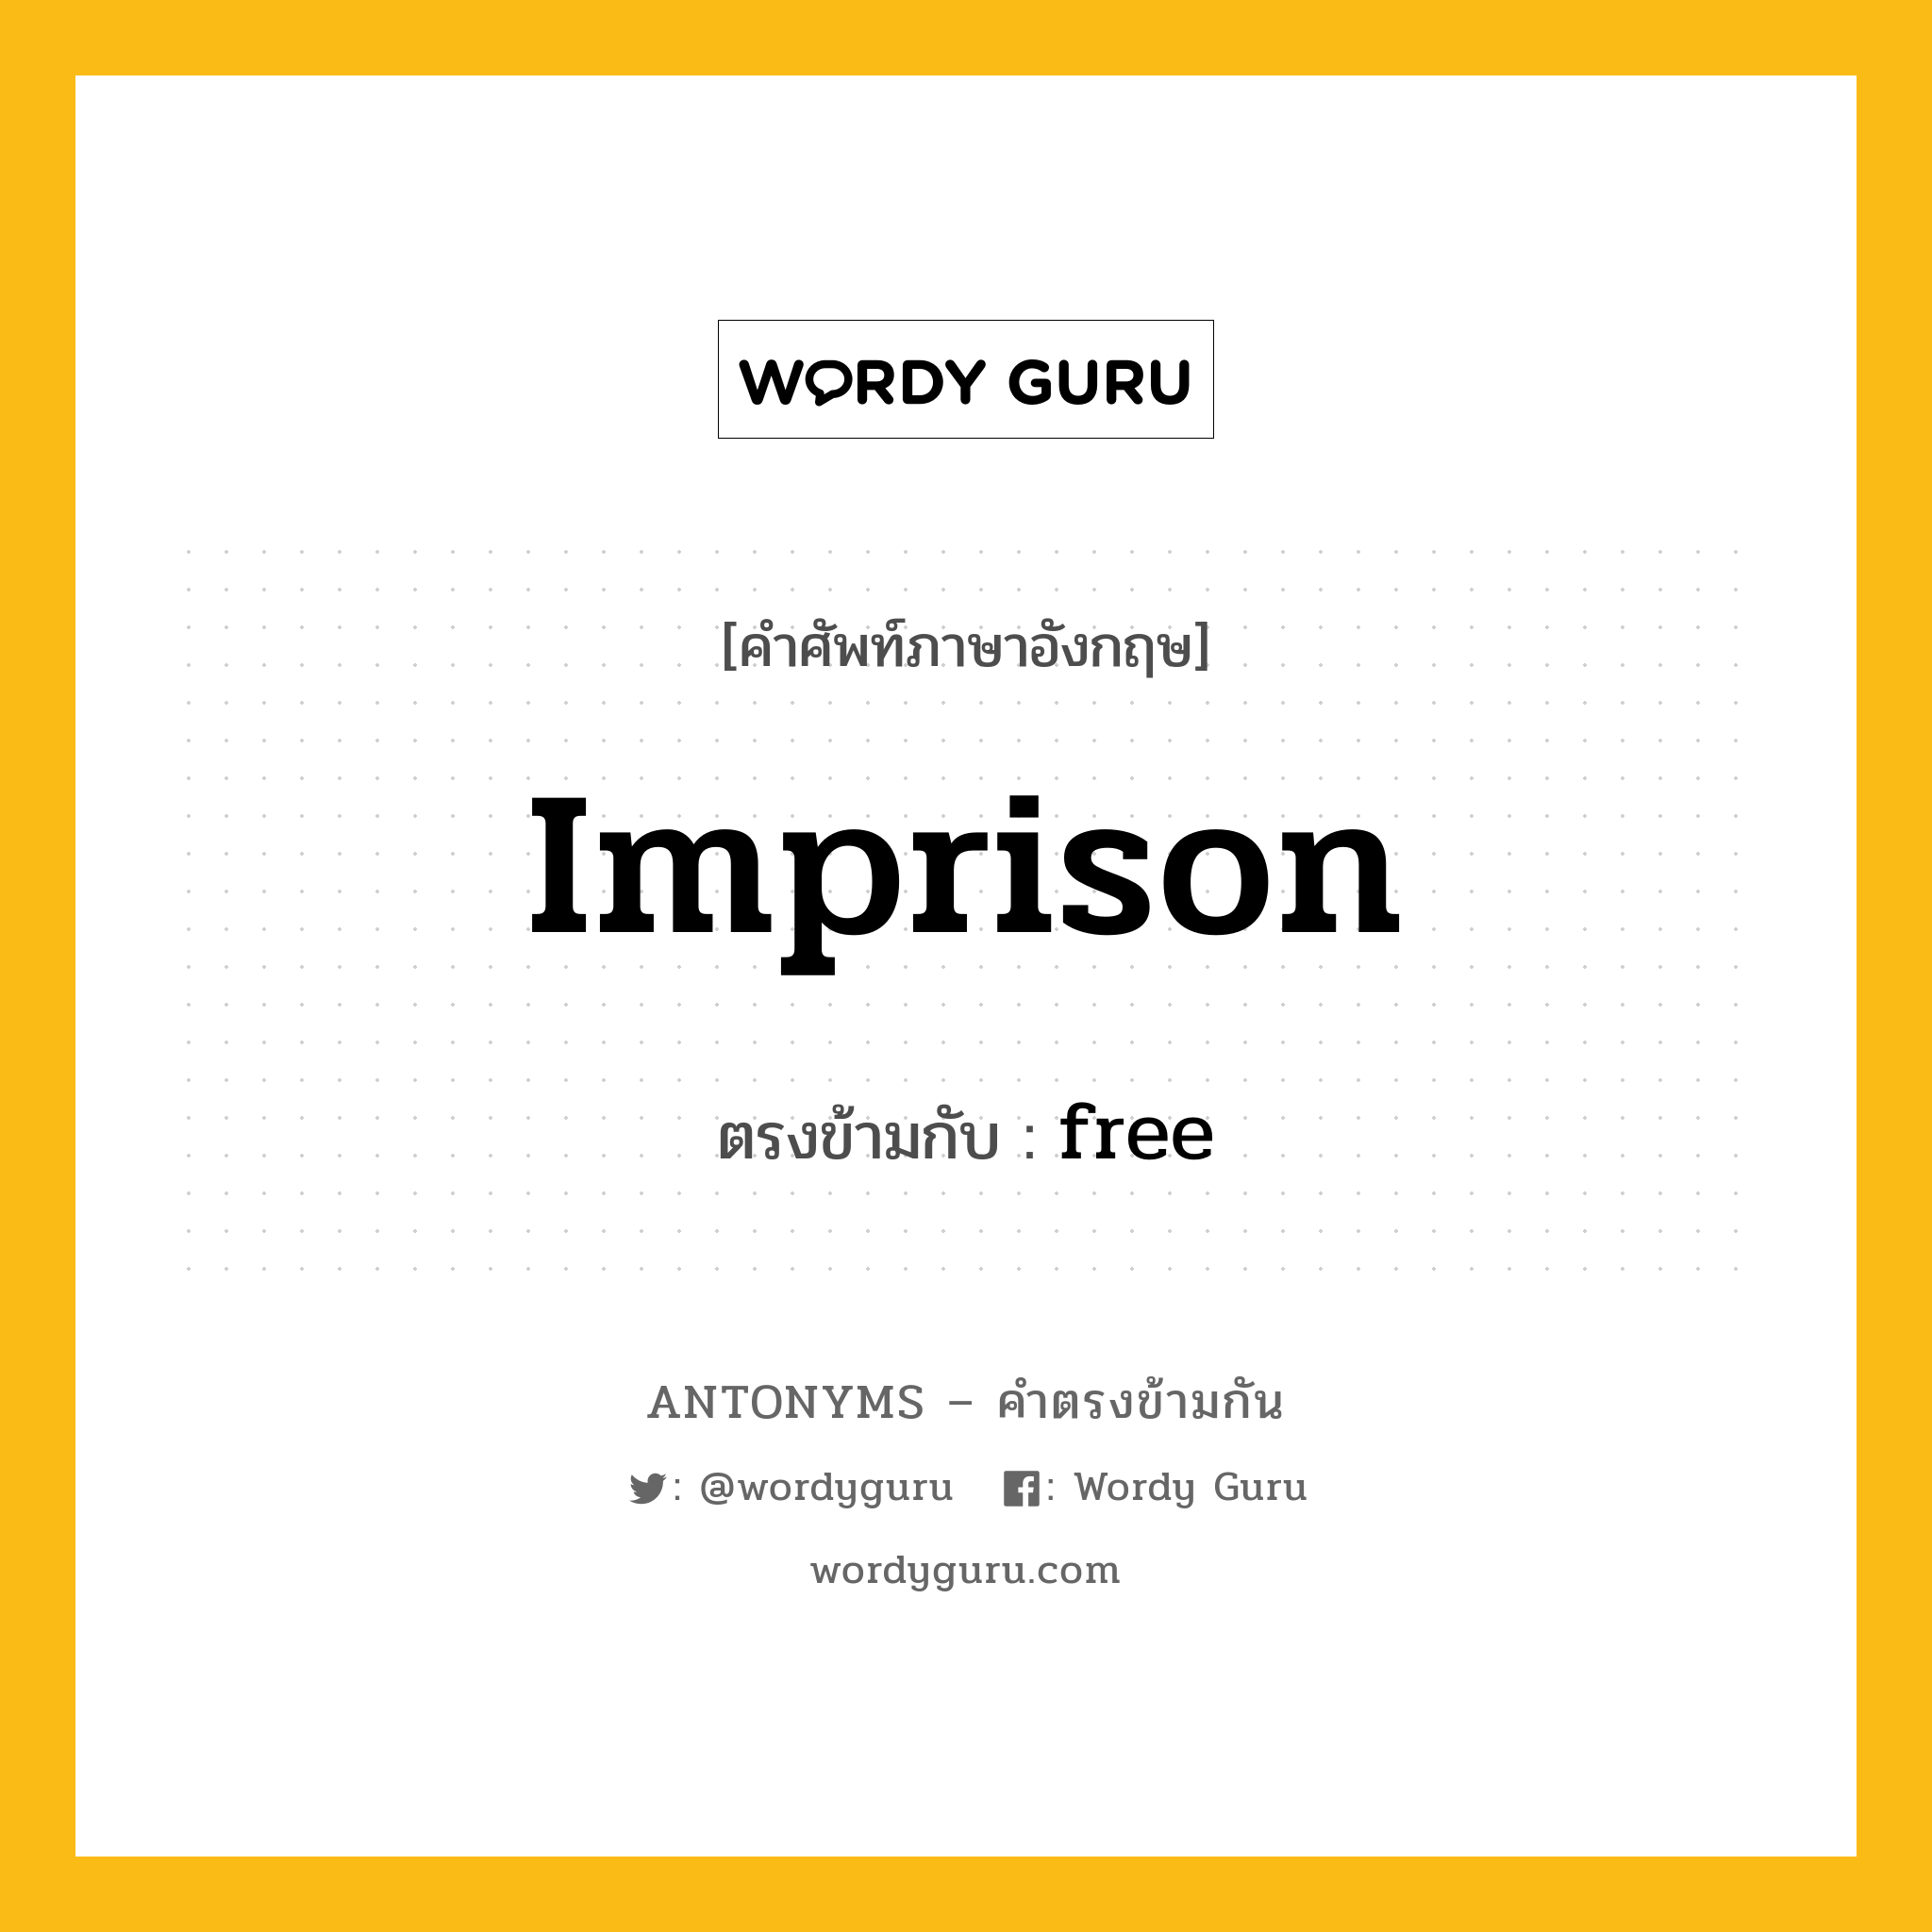 imprison เป็นคำตรงข้ามกับคำไหนบ้าง?, คำศัพท์ภาษาอังกฤษ imprison ตรงข้ามกับ free หมวด free